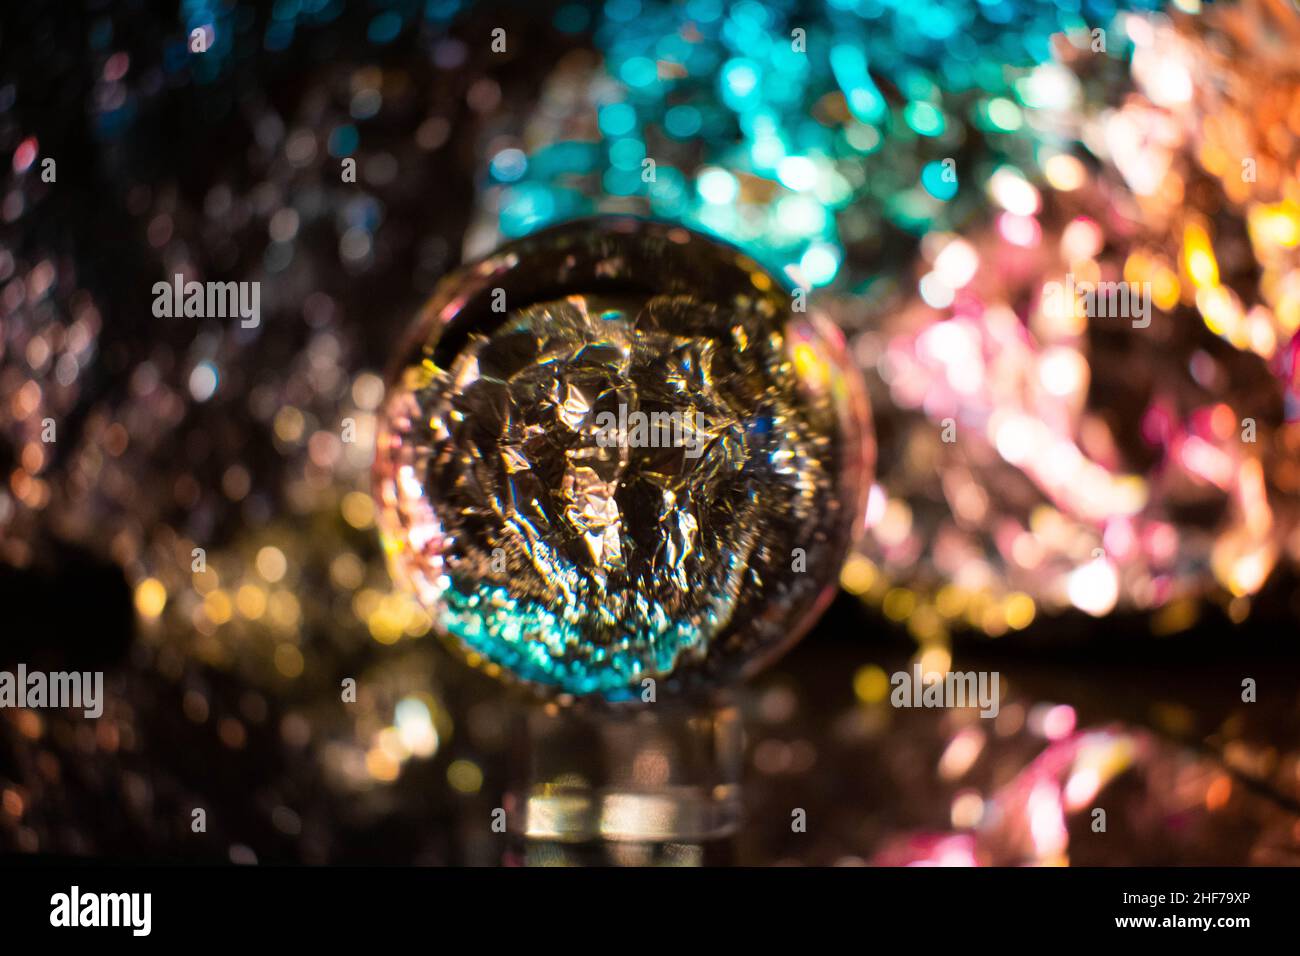 Schneekugel Fotografie Kristallkugel transparente Linse auf einem unscharfen Hintergrund, sehr künstlerisch, futuristisch, bunt, lebendig. Cooler Hintergrund und Backd Stockfoto